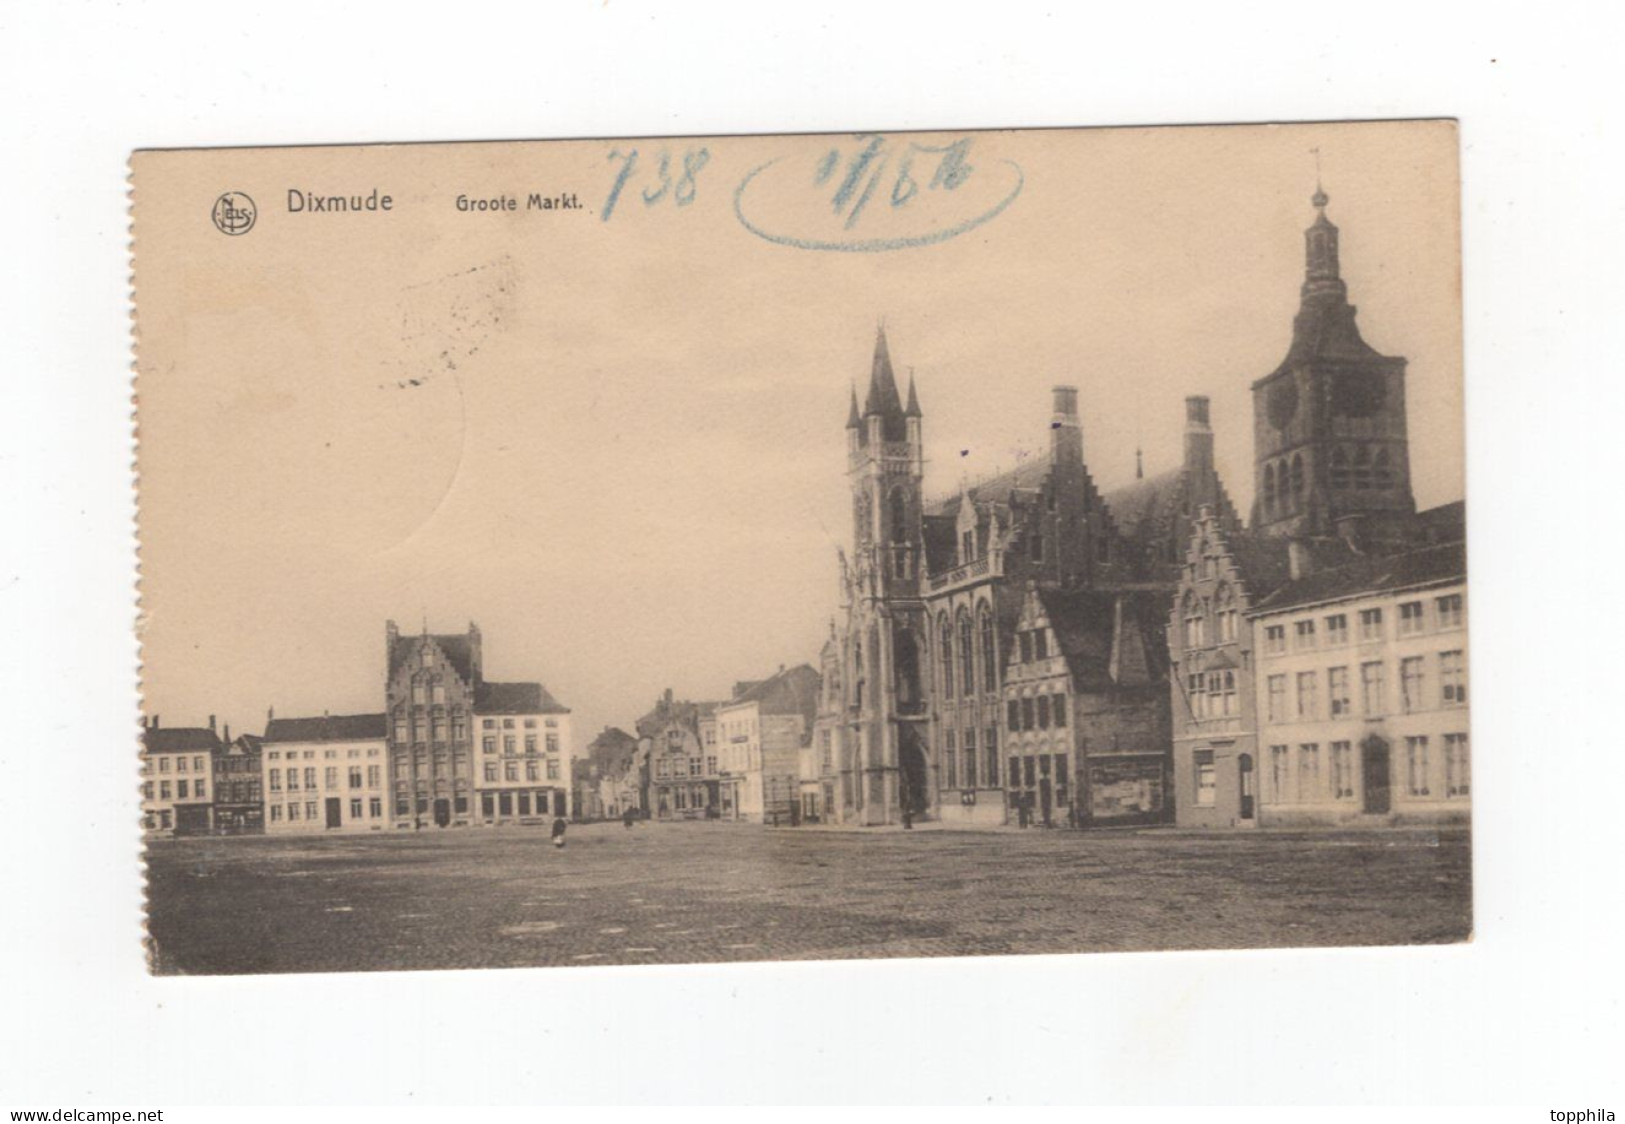 1916 Belgien 1. WK Dt. Besetzung  Photokarte Diksmuide Dixmude - Groote Markt - Feldartillerie  Regt. Nr. 406 - Diksmuide